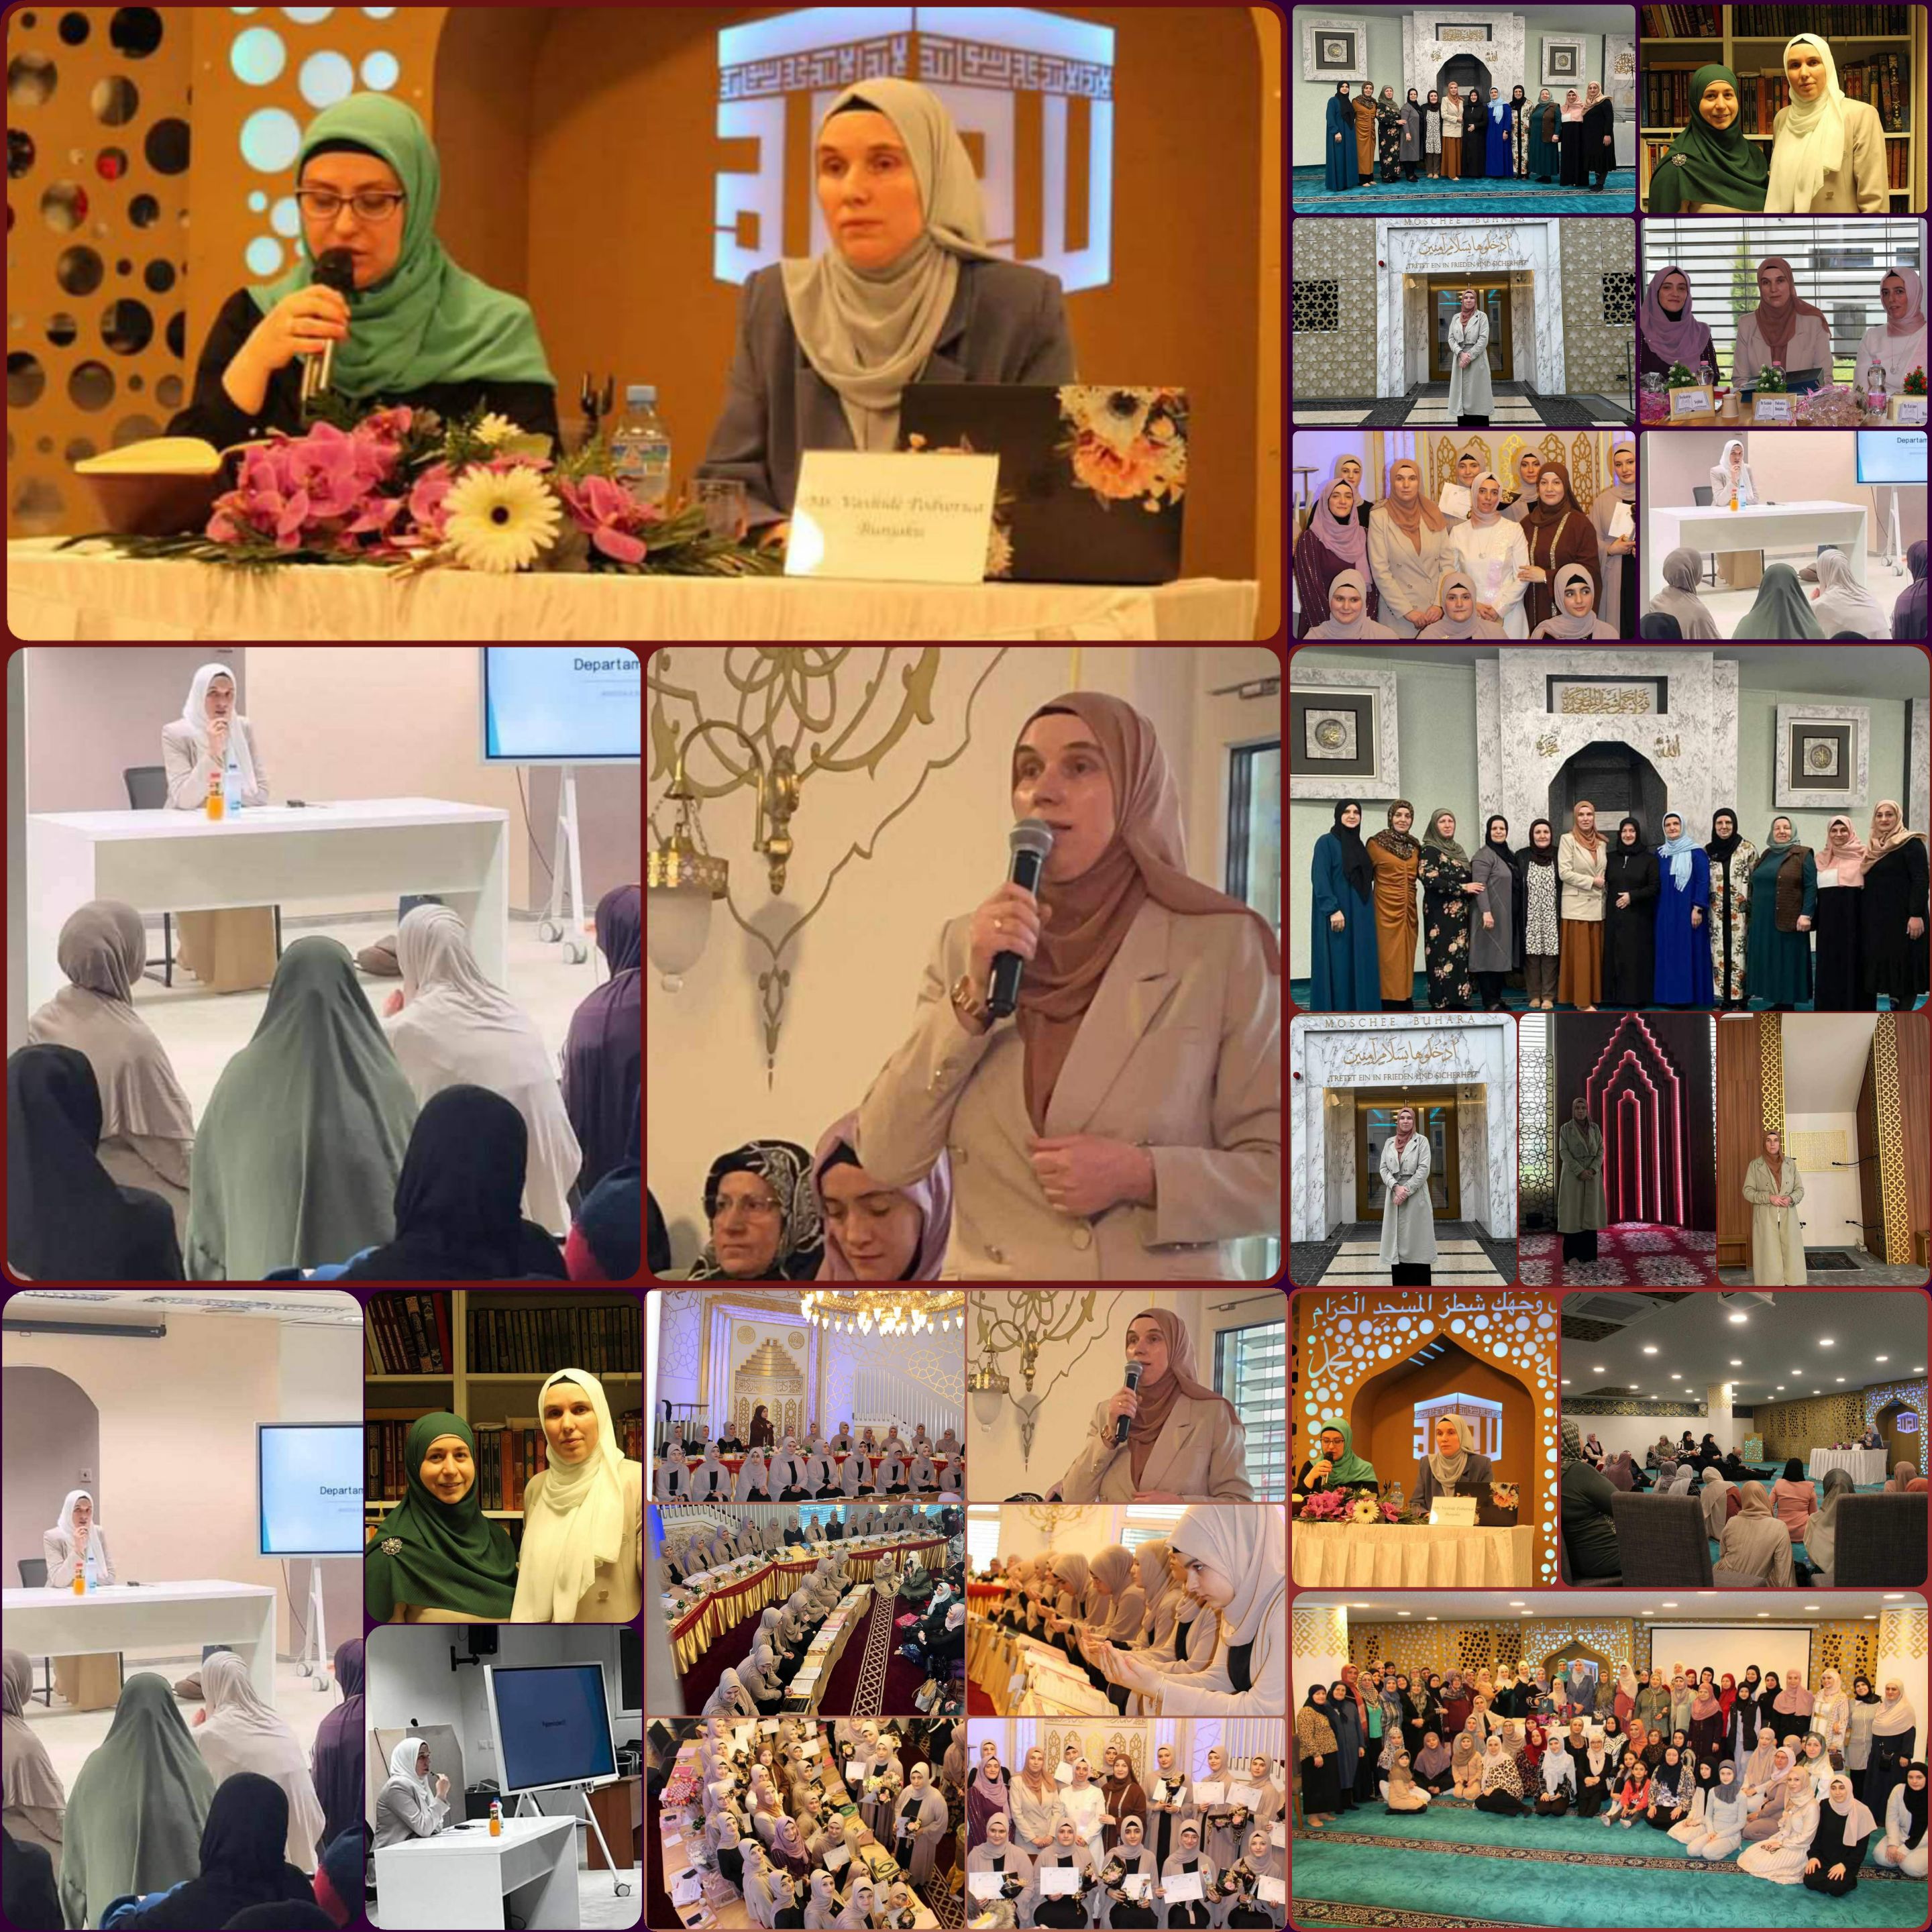 الزيارة الدعوية الرسمية الأولى لمسئولة قسم المرأة بالمشيخة الإسلامية في كوسوفا إلى سويسرا دشنت مرحلة جديدة من التعارف والتواصل والتعاون الرسمي مع التجمعات النسائية الألبانية المسلمة في أوروبا وحول العالم